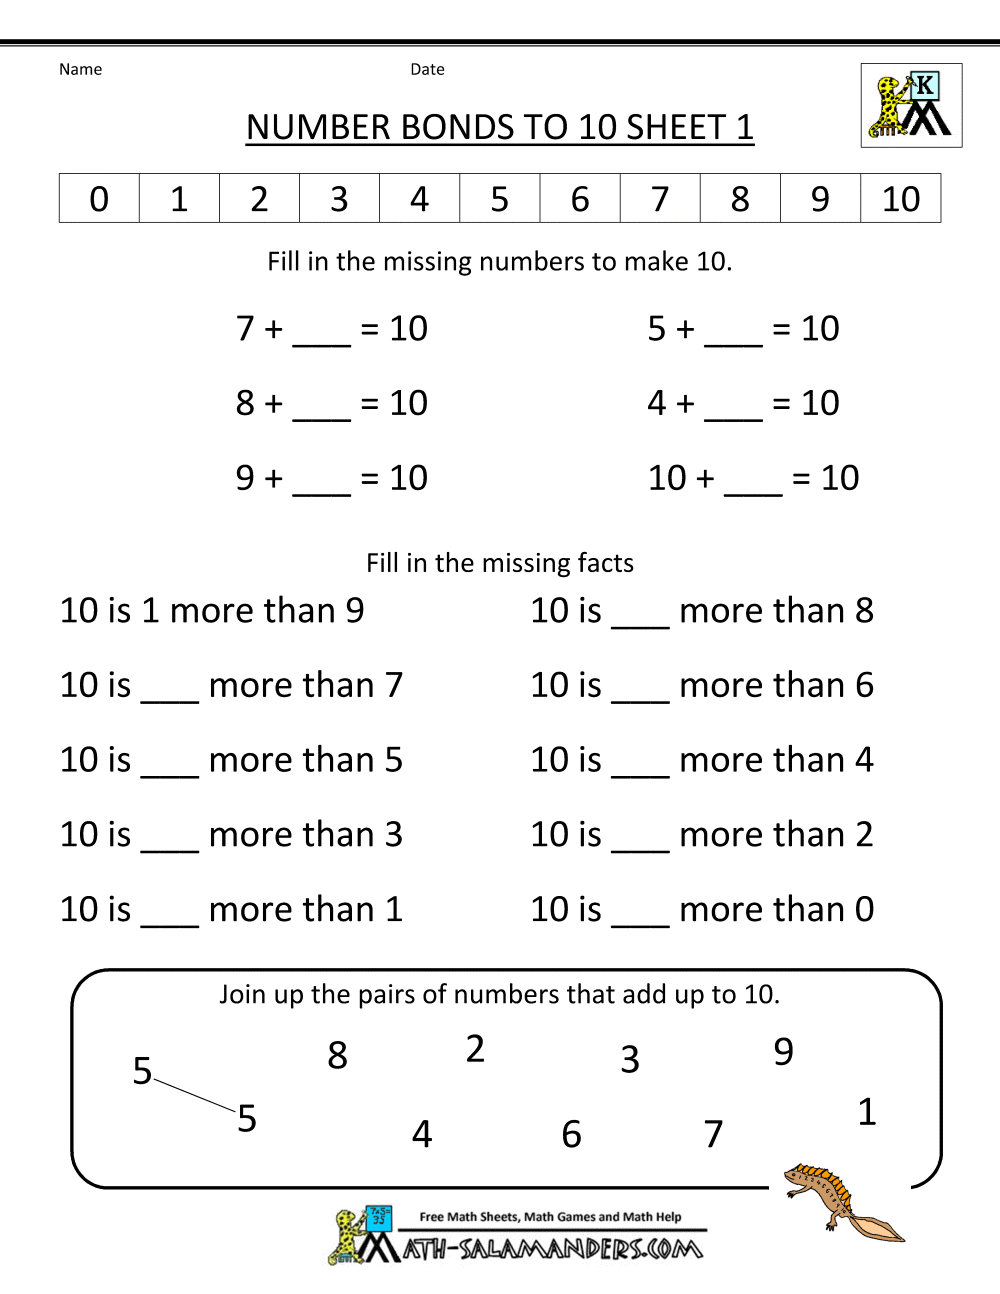 Kindergarten Math Worksheets Number Bonds To 10 1 Gif Image